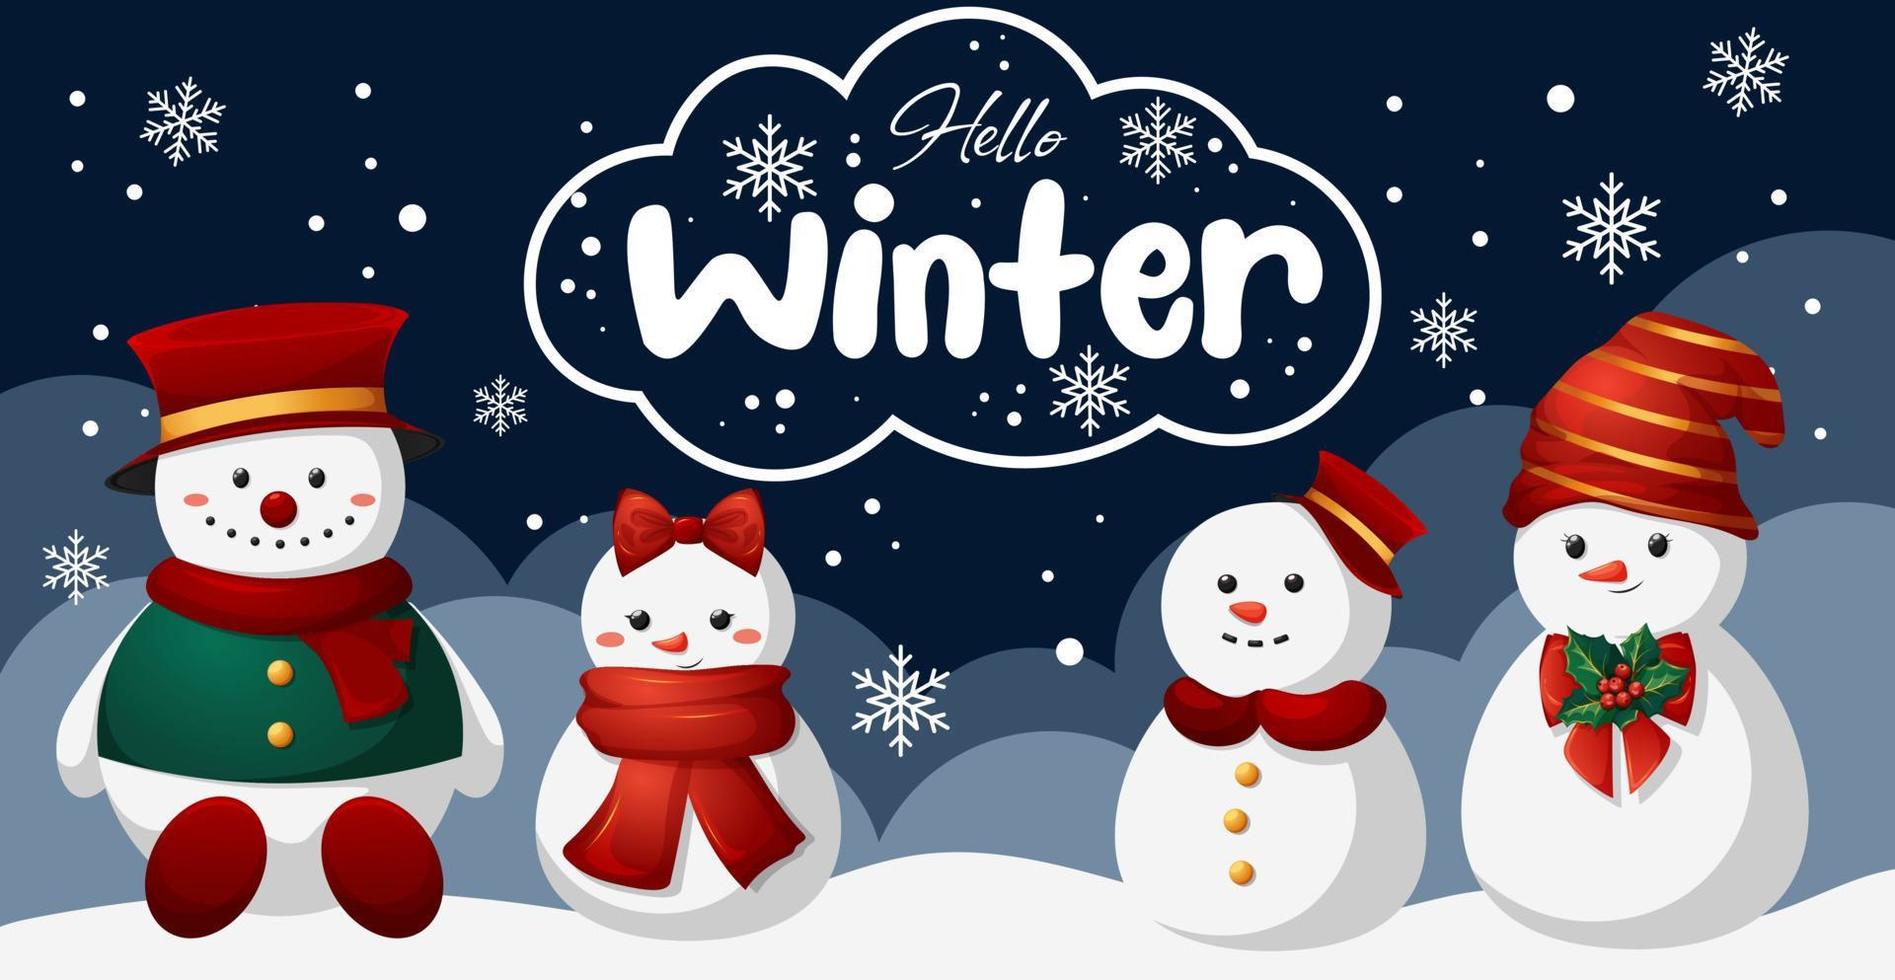 cartone animato inverno sfondo con pupazzi di neve, cumuli di neve, neve e lettering Ciao inverno vettore